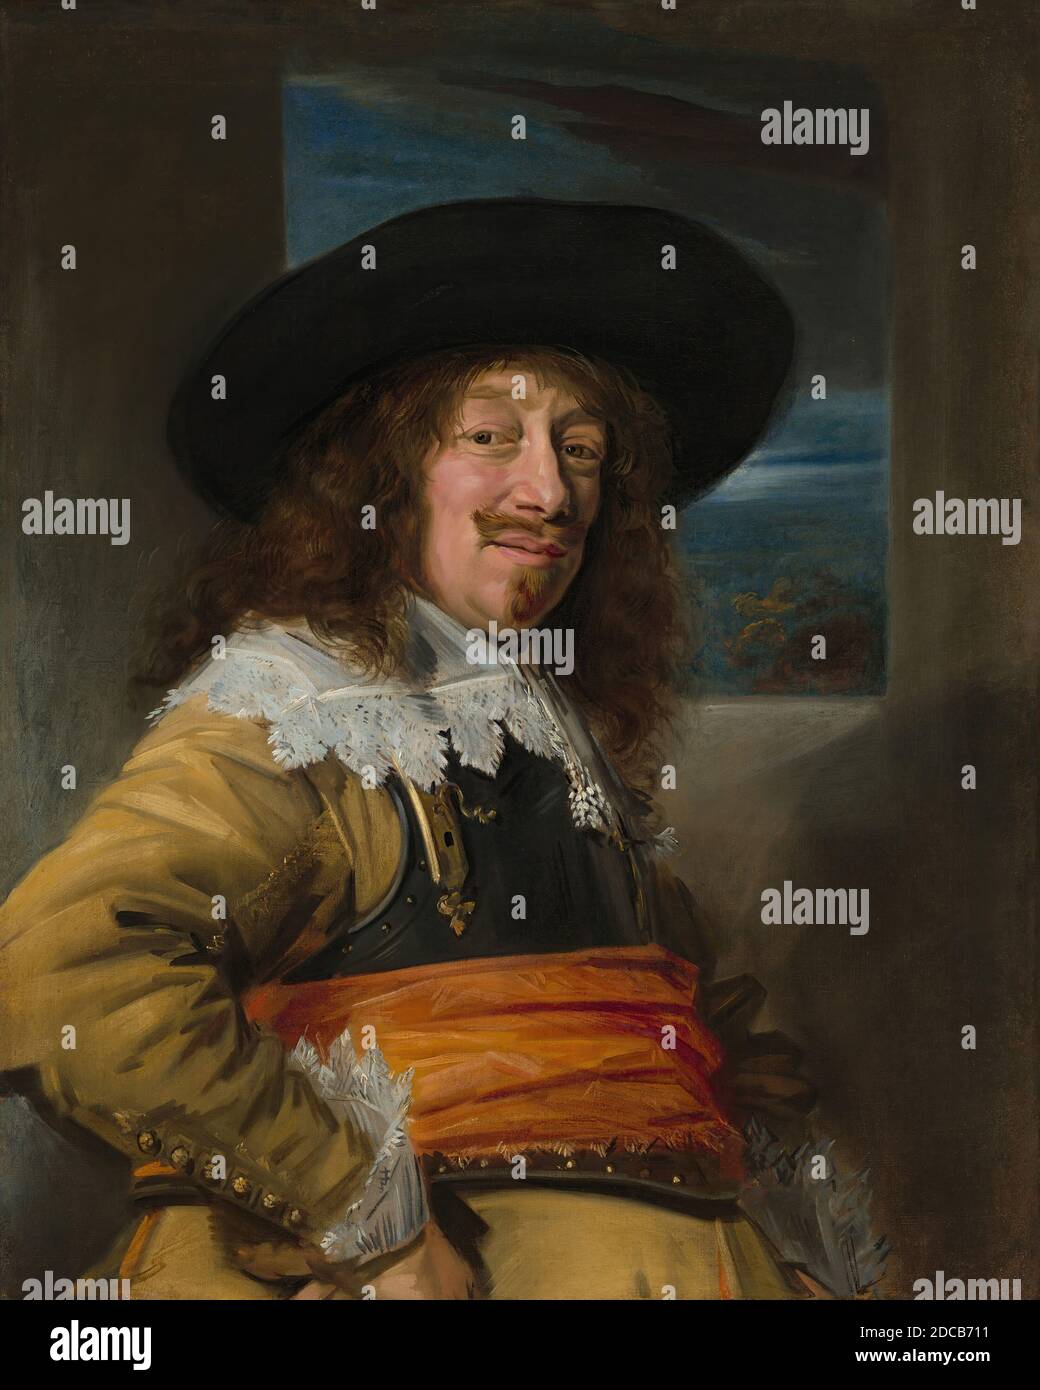 Frans Hals, (Künstler), Niederländisch, c. 1582/1583 - 1666, Porträt eines Mitglieds der Bürgergarde Haarlem, c. 1636/1638, Öl auf Leinwand, gesamt: 86 x 69 cm (33 7/8 x 27 3/16 Zoll), gerahmt: 110.2 x 95.3 x 7.6 cm (43 3/8 x 37 1/2 x 3 in.), ab 1568 brachen sieben Provinzen der Niederlande in Revolte gegen die spanische Herrschaft ab und initiieren einen Unabhängigkeitskrieg, der bis 1648 andauerte. In den ersten Jahren des Konflikts haben vor allem die Milizen (Bürgermeistereien) von Haarlem einen heroischen Kampf geführt Stockfoto